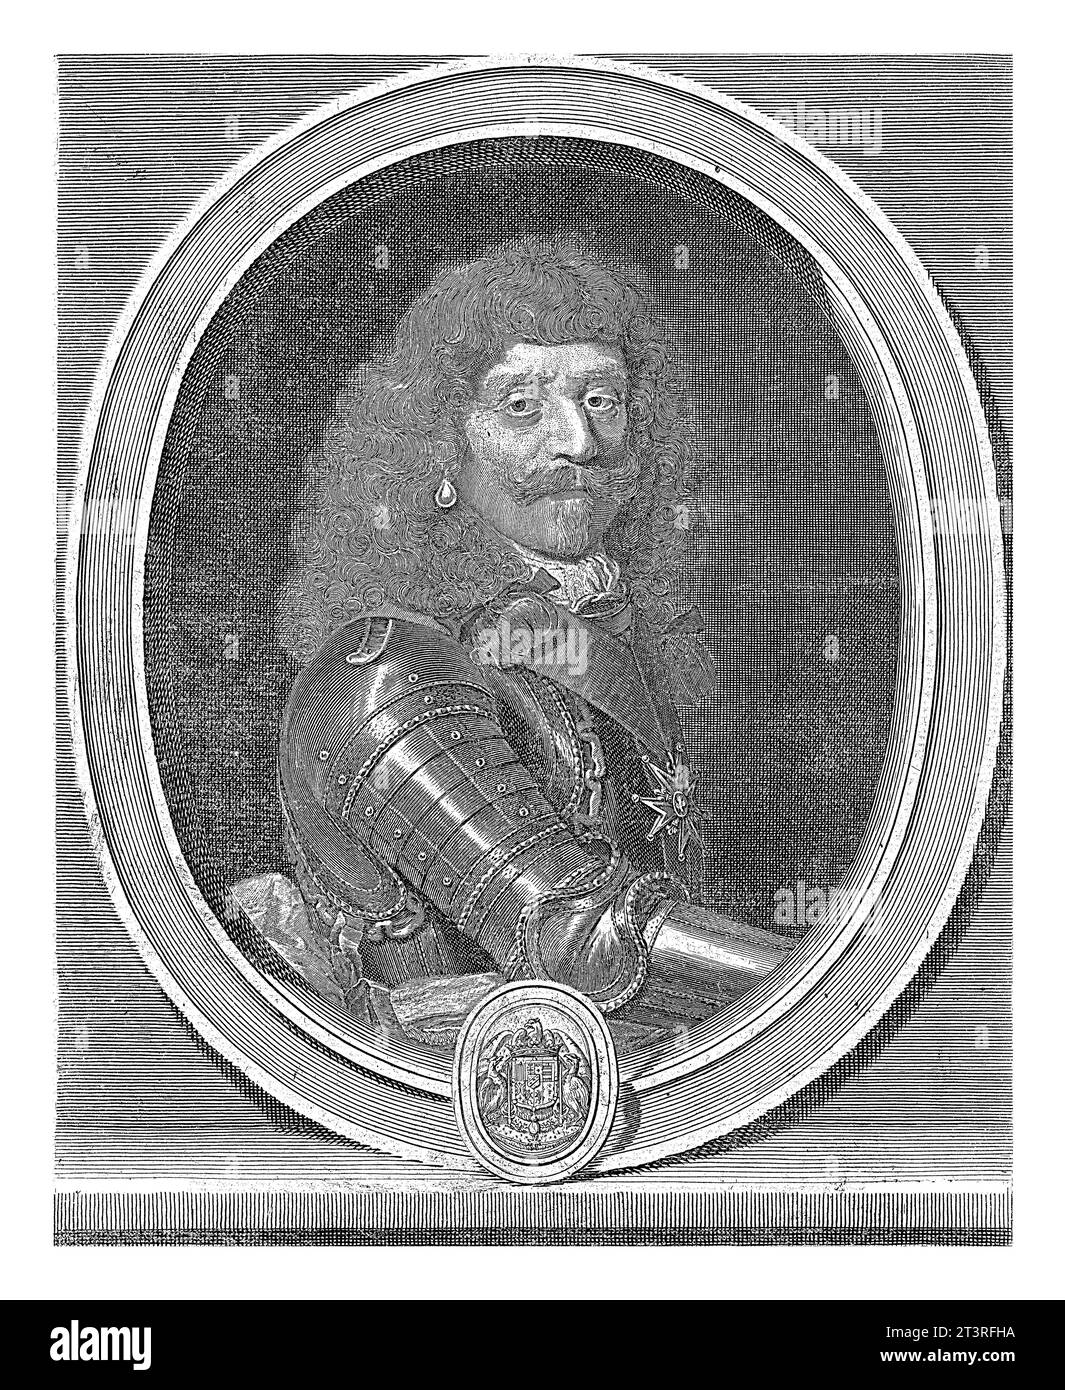 Porträt Henri de Lorraine, Gerard Edelinck, nach Pierre Mignard (1612-1695), 1666 - 1707 Porträt des französischen Generals Henri de Lorraine (1601-1) Stockfoto